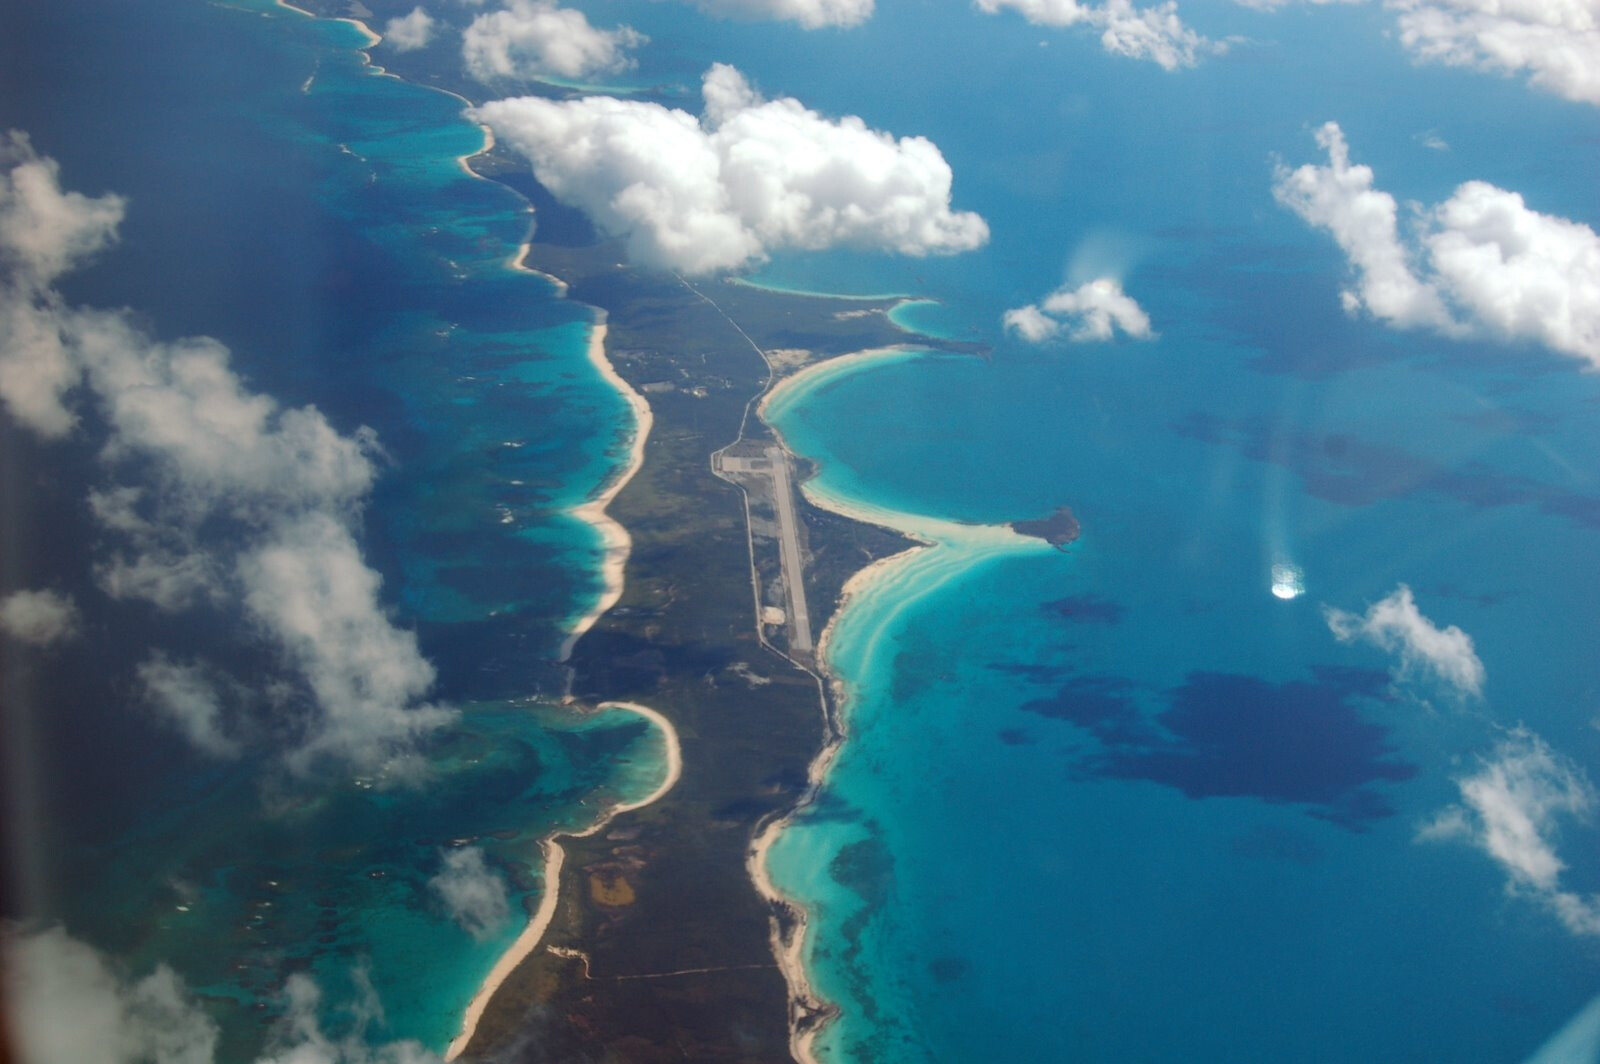 Наибольшее море атлантического океана. Эльютера Багамские острова. Карибское море Атлантический океан. Остров Эльютера. Карибское море Атлантический океан слияние.